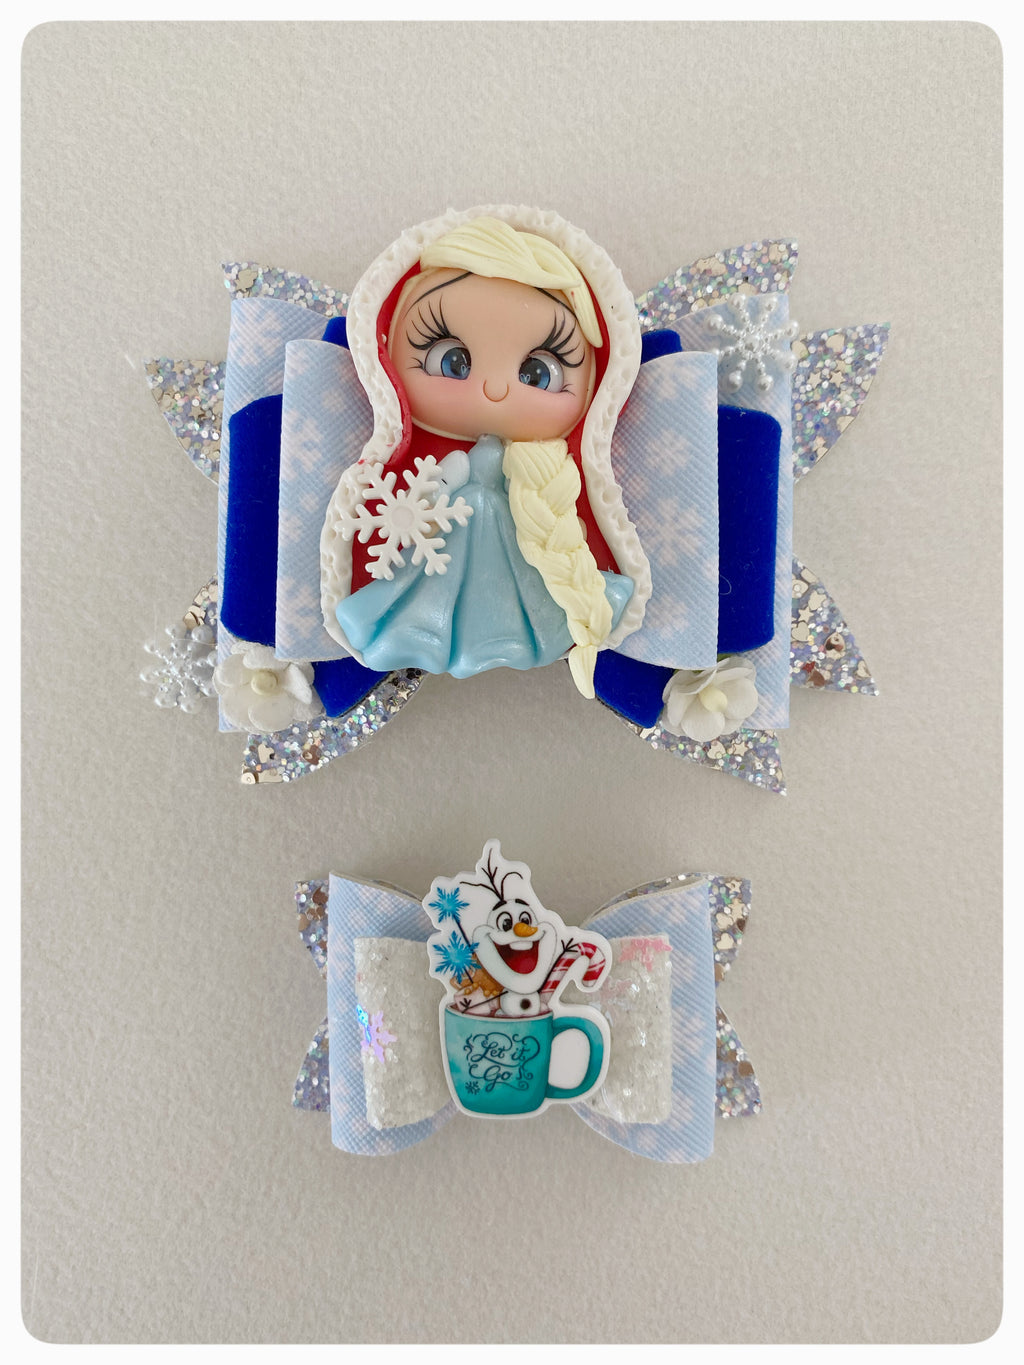 Christmas Elsa and Olaf